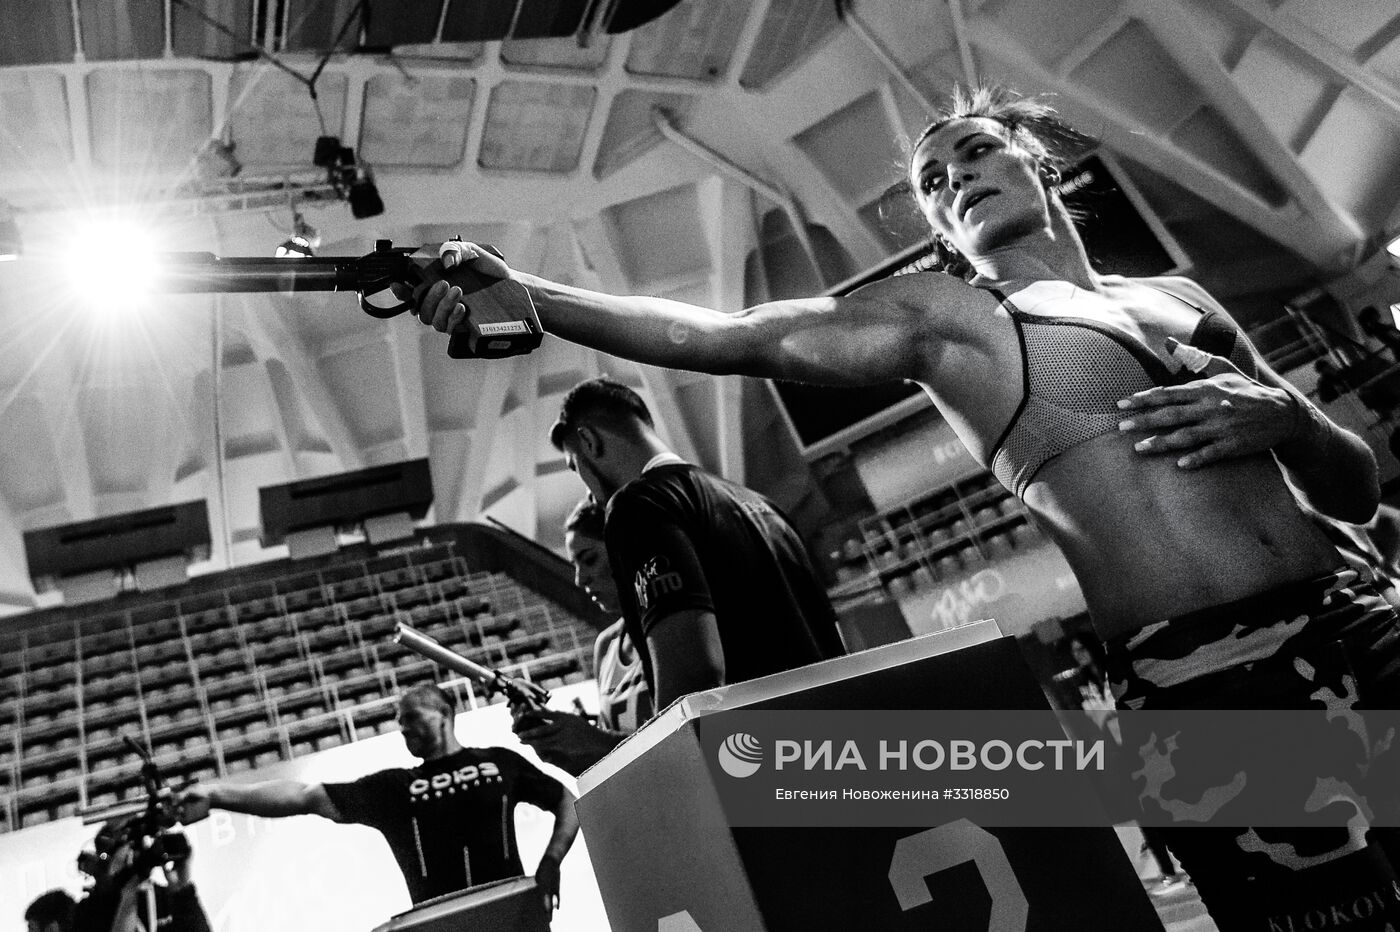 Фотокорреспондент МИА "Россия Сегодня" Е. Новоженина победила в фотоконкурсе "Самарский взгляд" в номинации "Спорт"